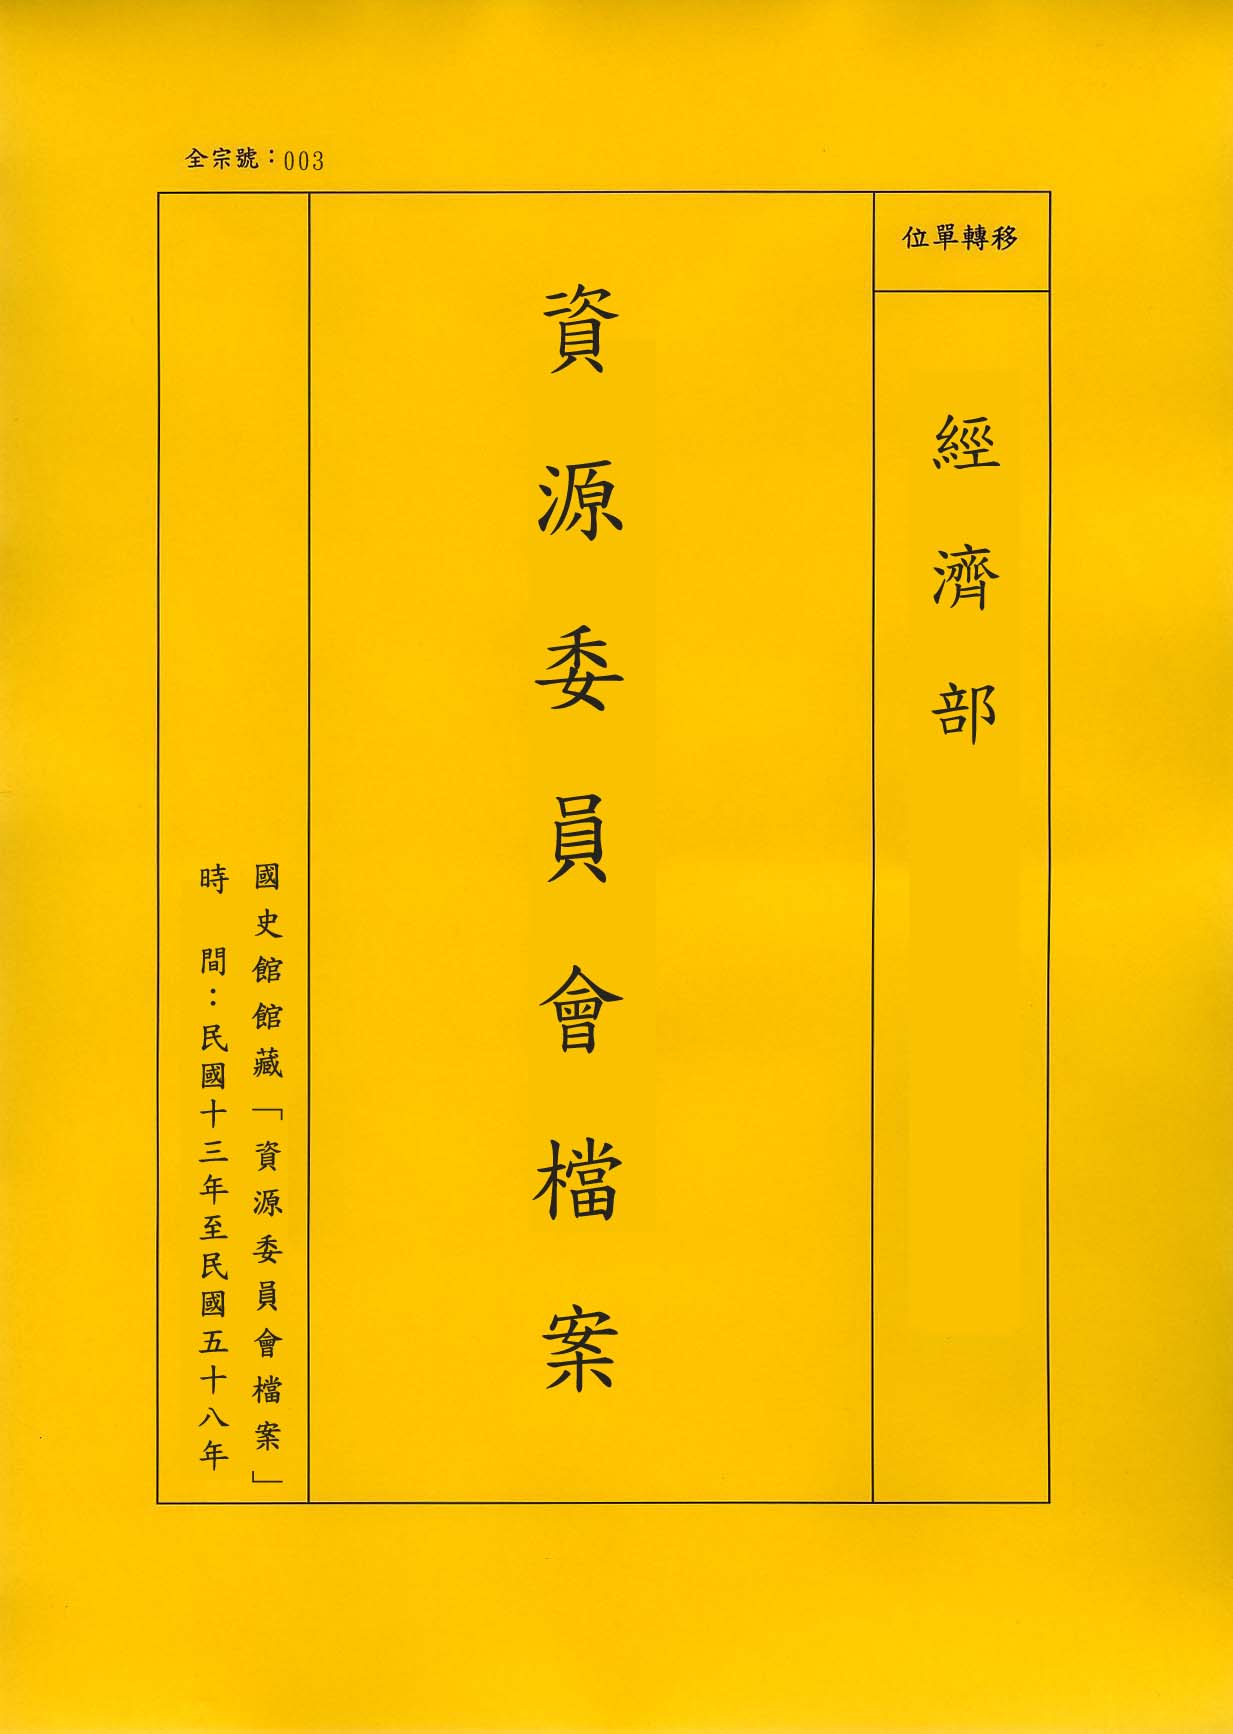 卷名:製革工廠調查表─上海(一)(003-010306-0124)